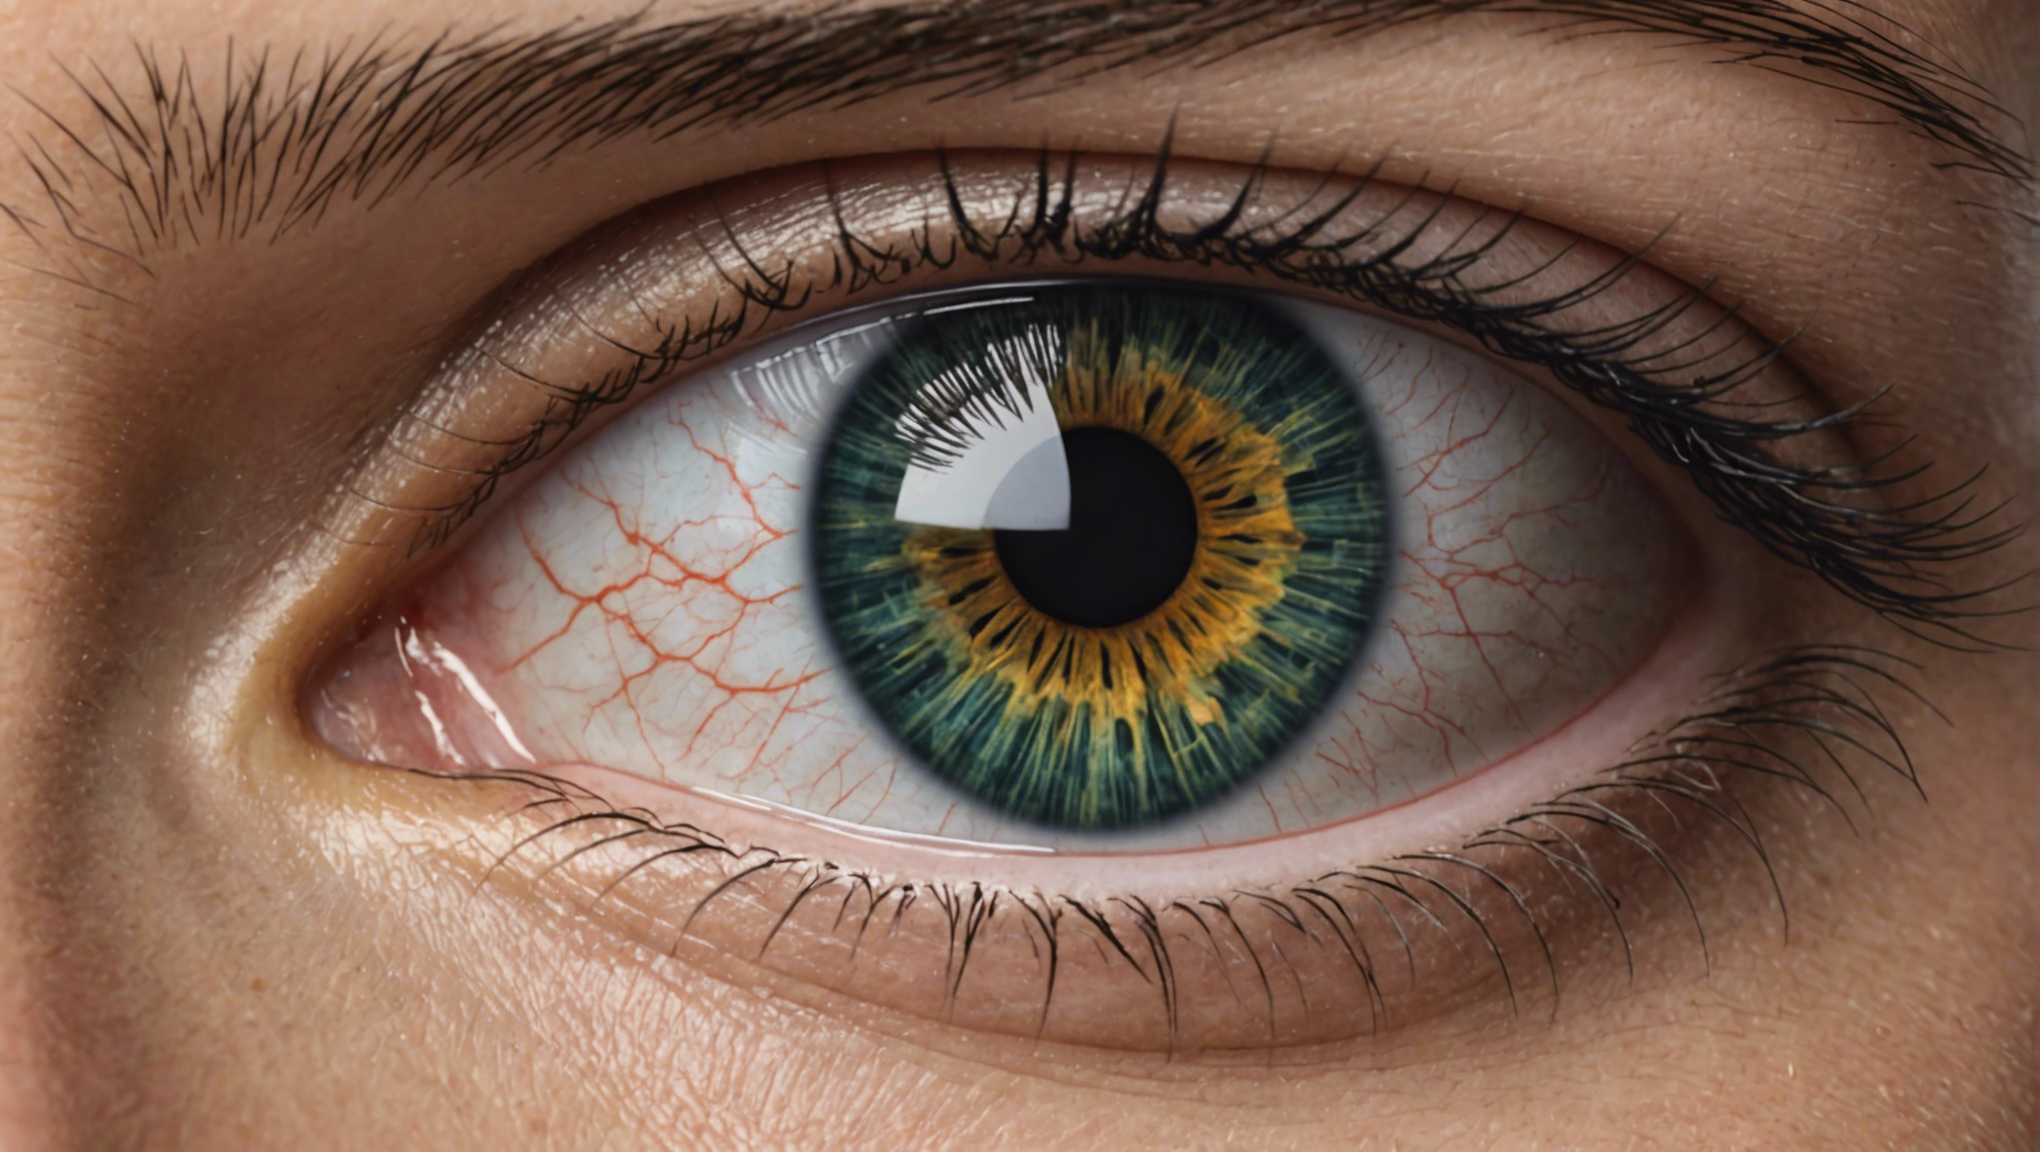 découvrez les avantages de l'opération des yeux à saint-étienne pour une vision améliorée. nos spécialistes vous offrent une solution claire pour une meilleure acuité visuelle.